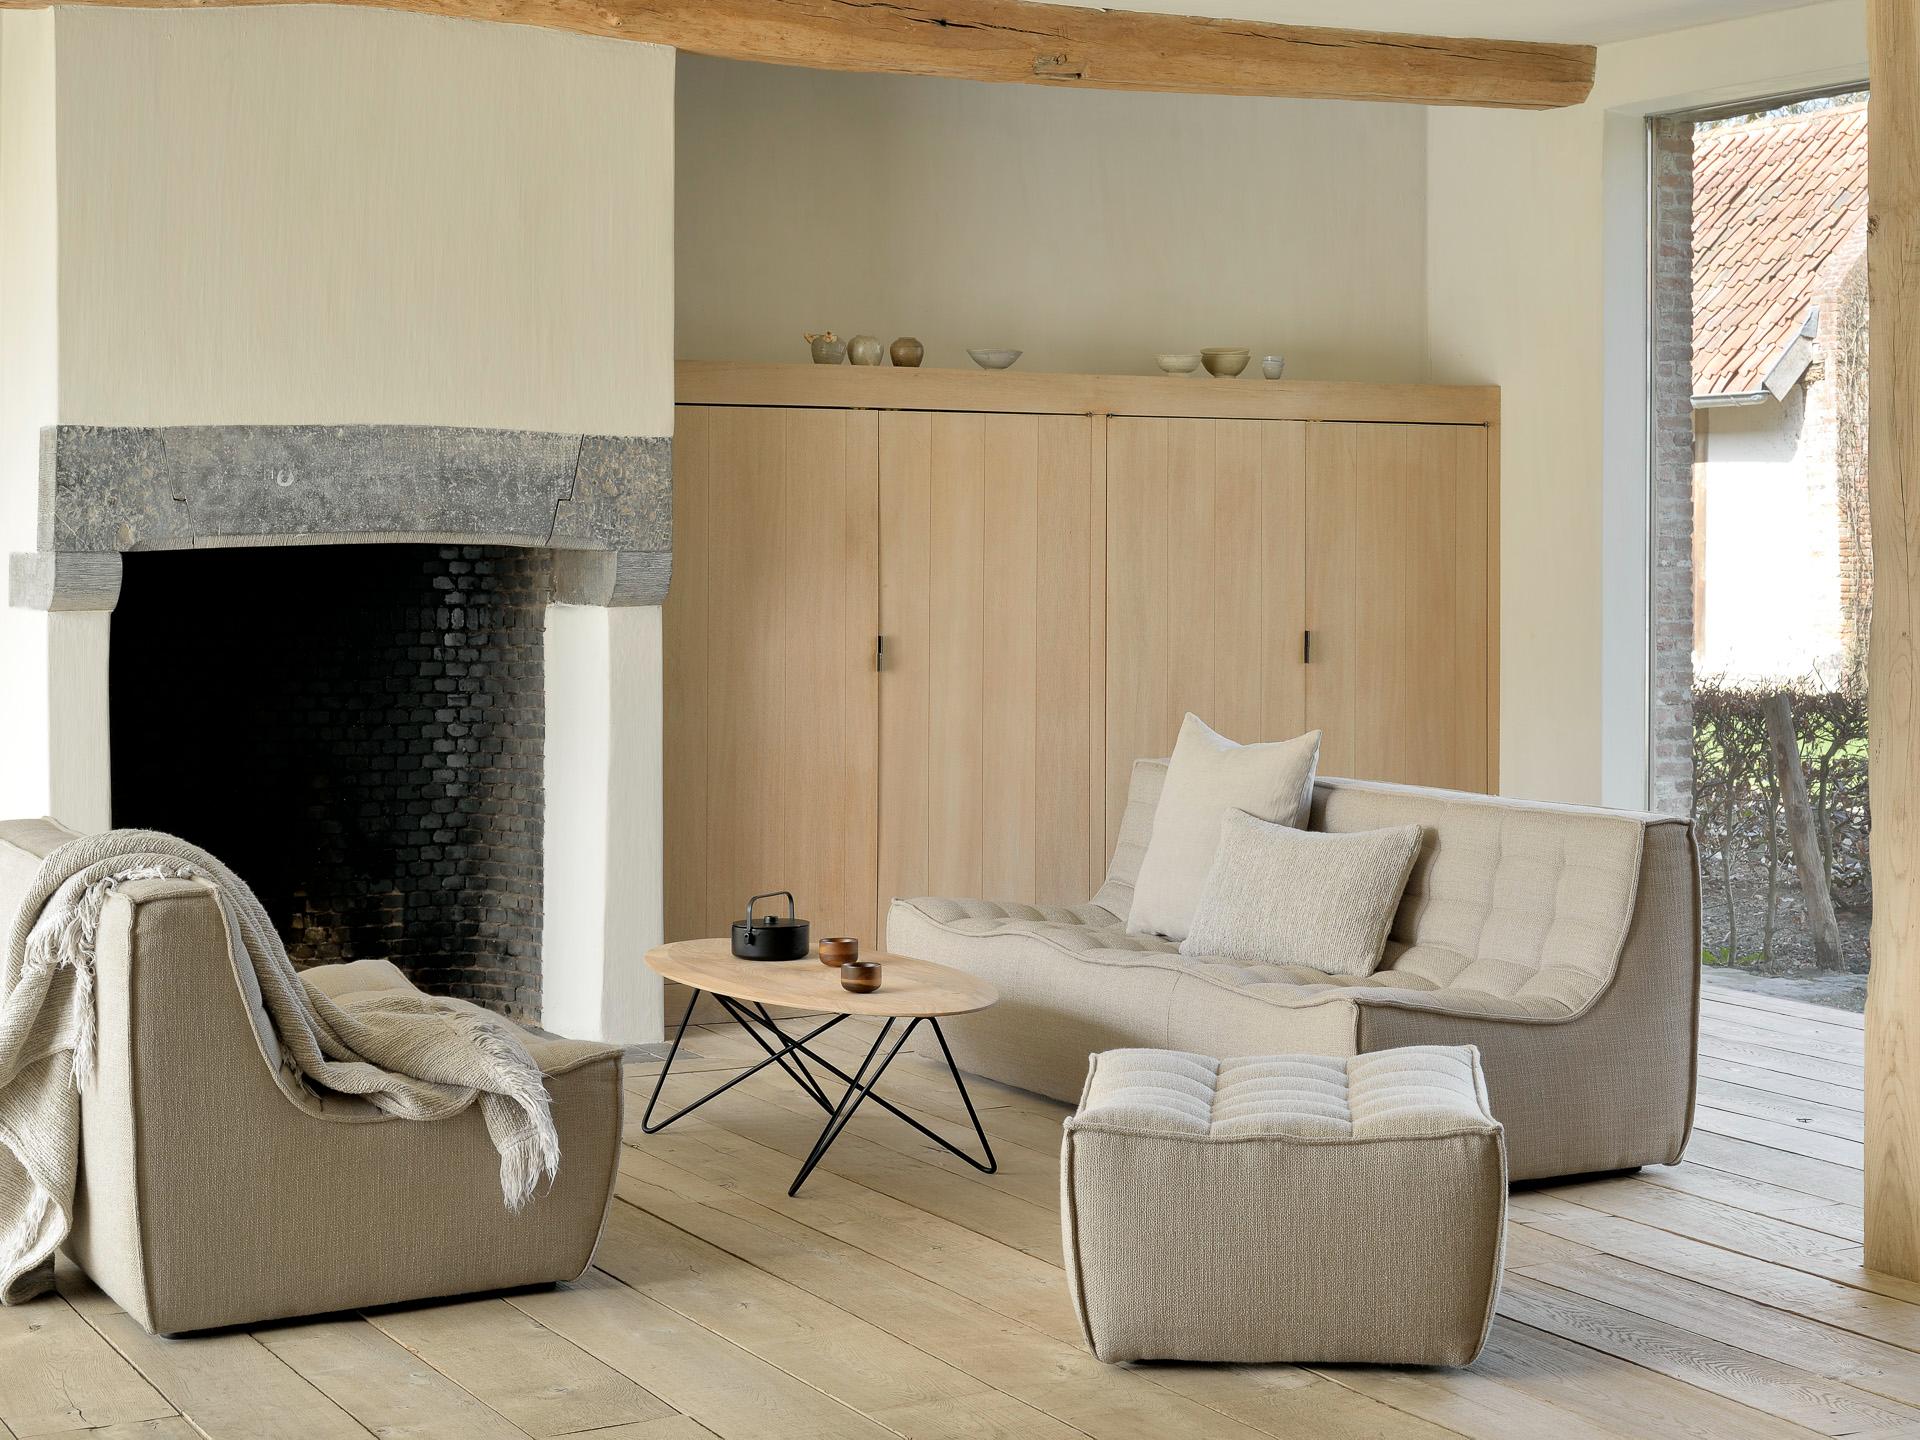 Living room furniture set with Ethnicraft furniture | Live Light